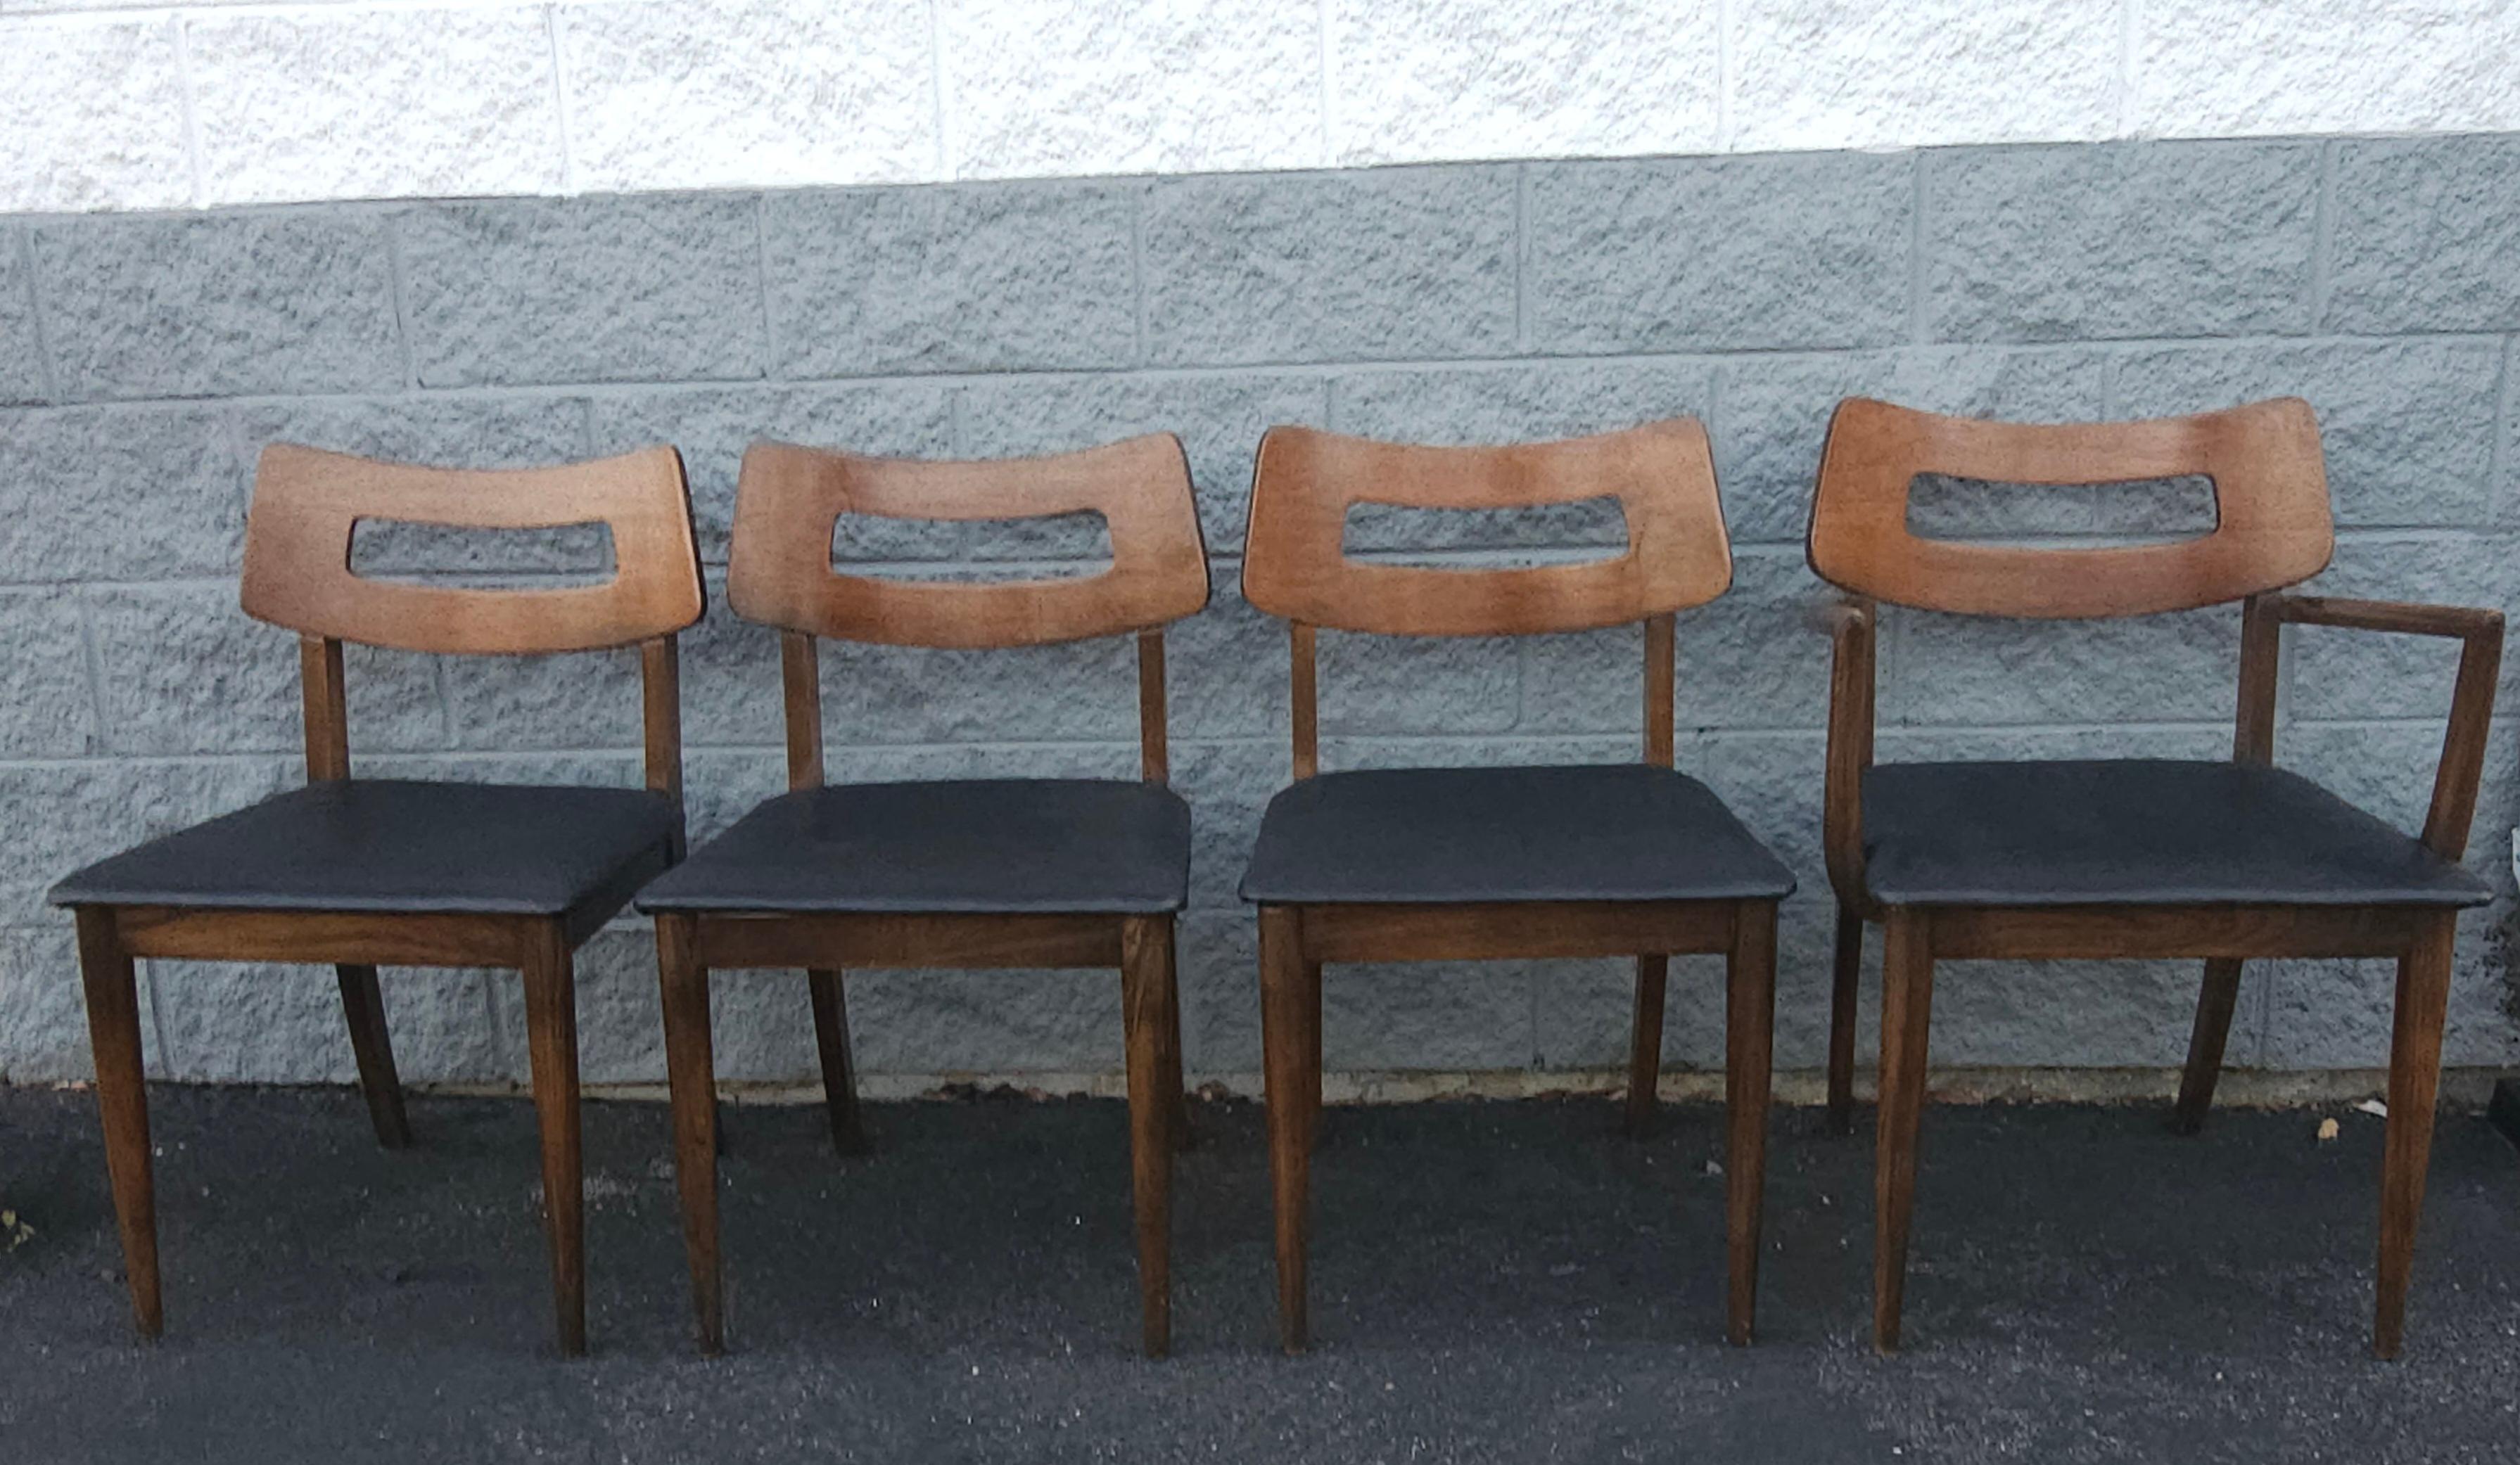 Satz von 4 gepolsterten Stühlen aus Nussbaum und Vinylsitz aus der Mitte des Jahrhunderts. In sehr gutem Vintage-Zustand. Solide Vinylsitze aus der Mitte des Jahrhunderts in gutem Zustand. Drei Beistellstühle und ein Sessel. 

Maße 19